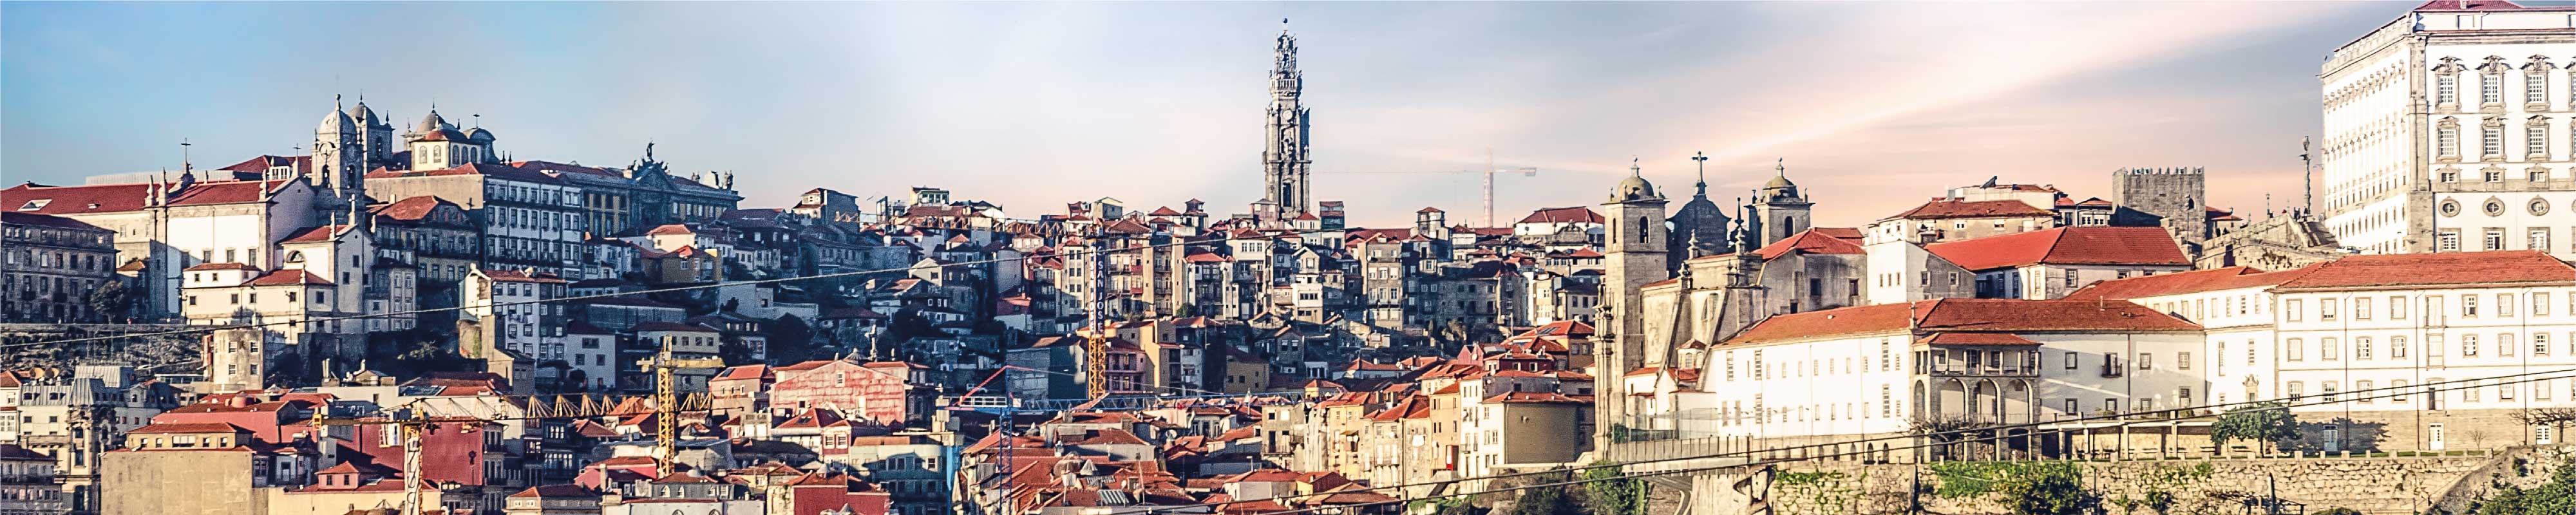 Gepäckaufbewahrung | Porto - Nannybag